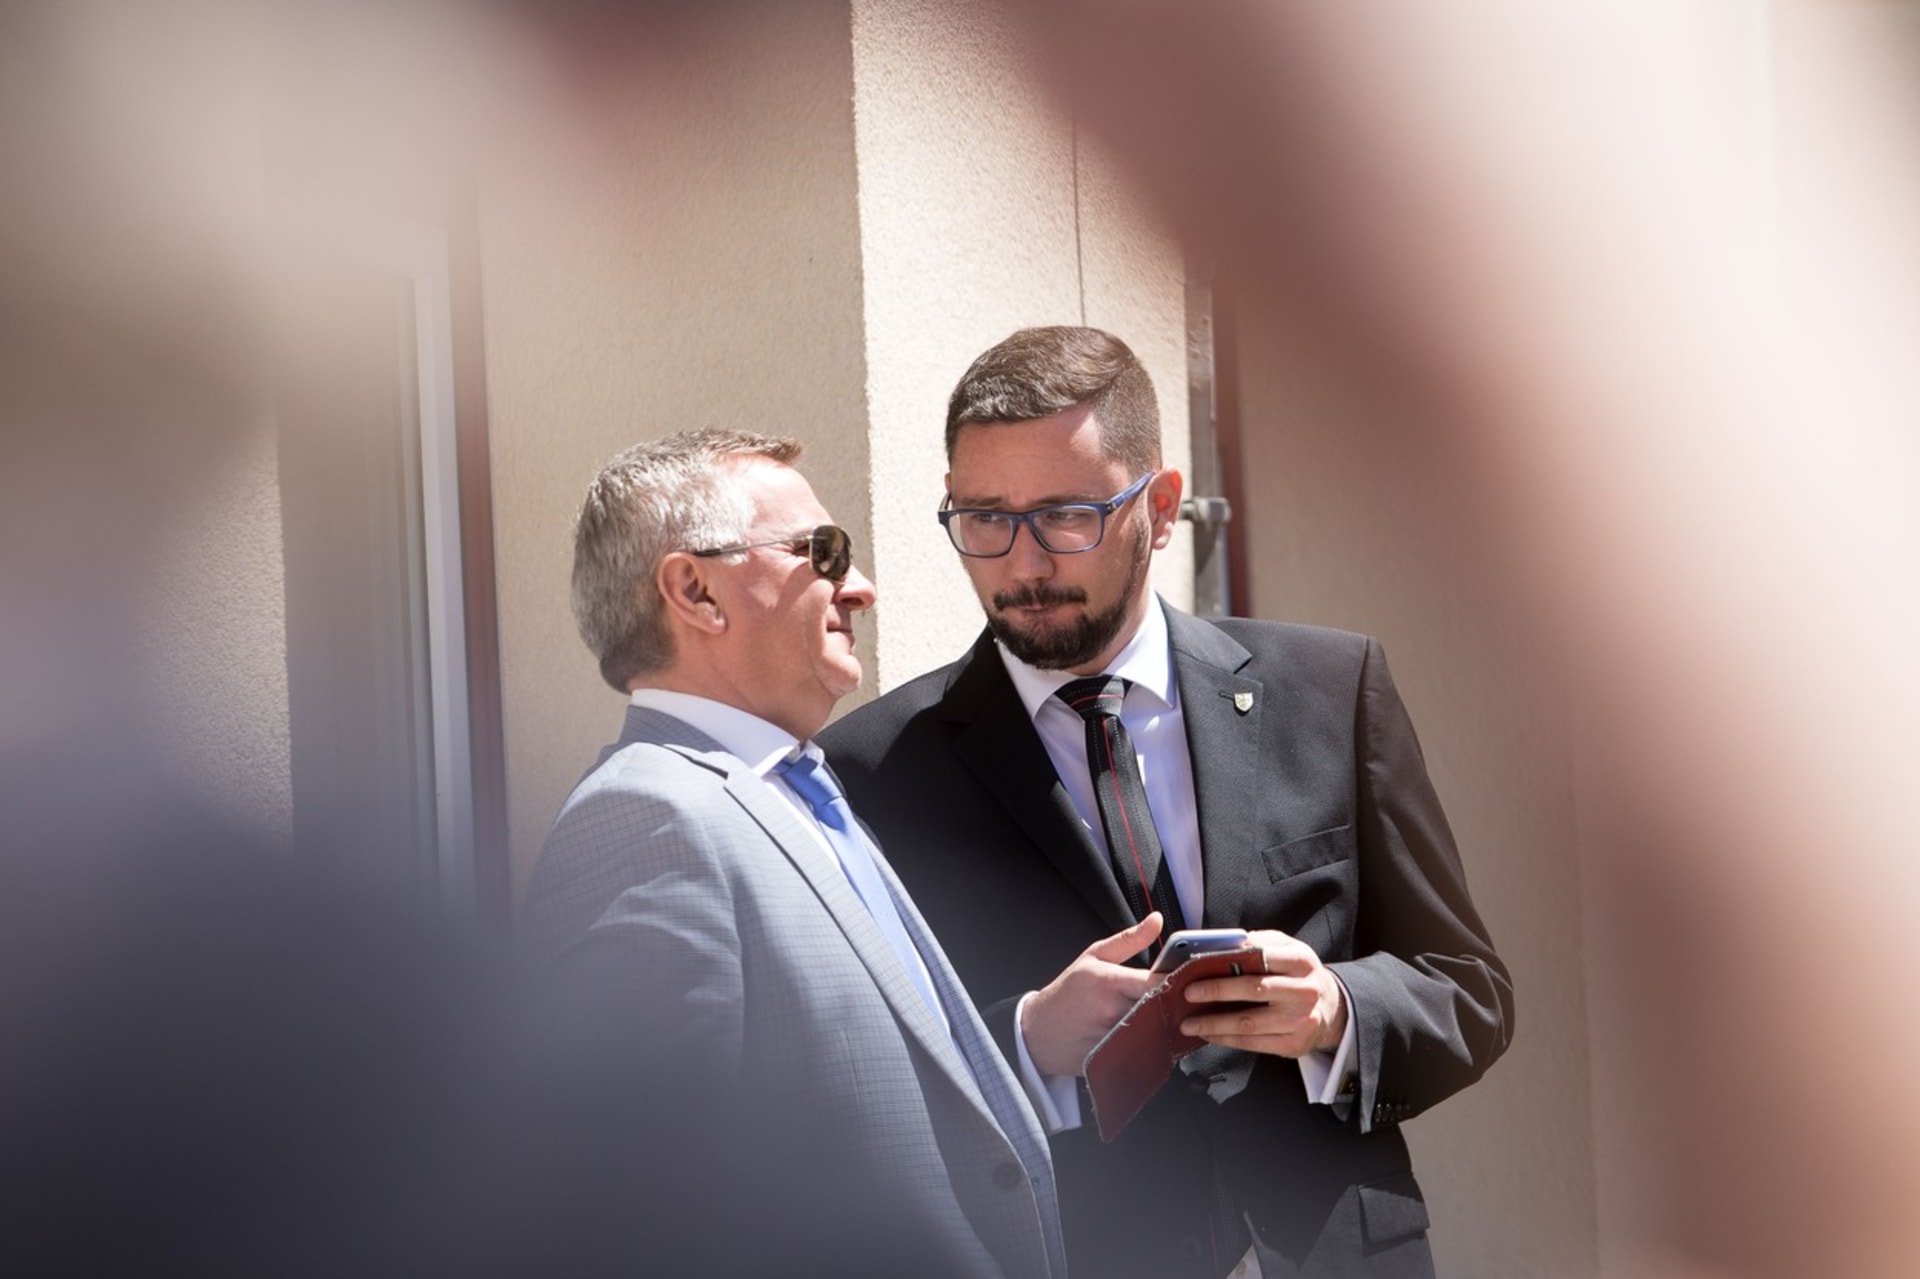 Na snímku mluvčí prezidenta Miloše Zemana Jiří Ovčáček a vedoucím Kanceláře prezidenta Miloše Zemana Vratislav Mynář.